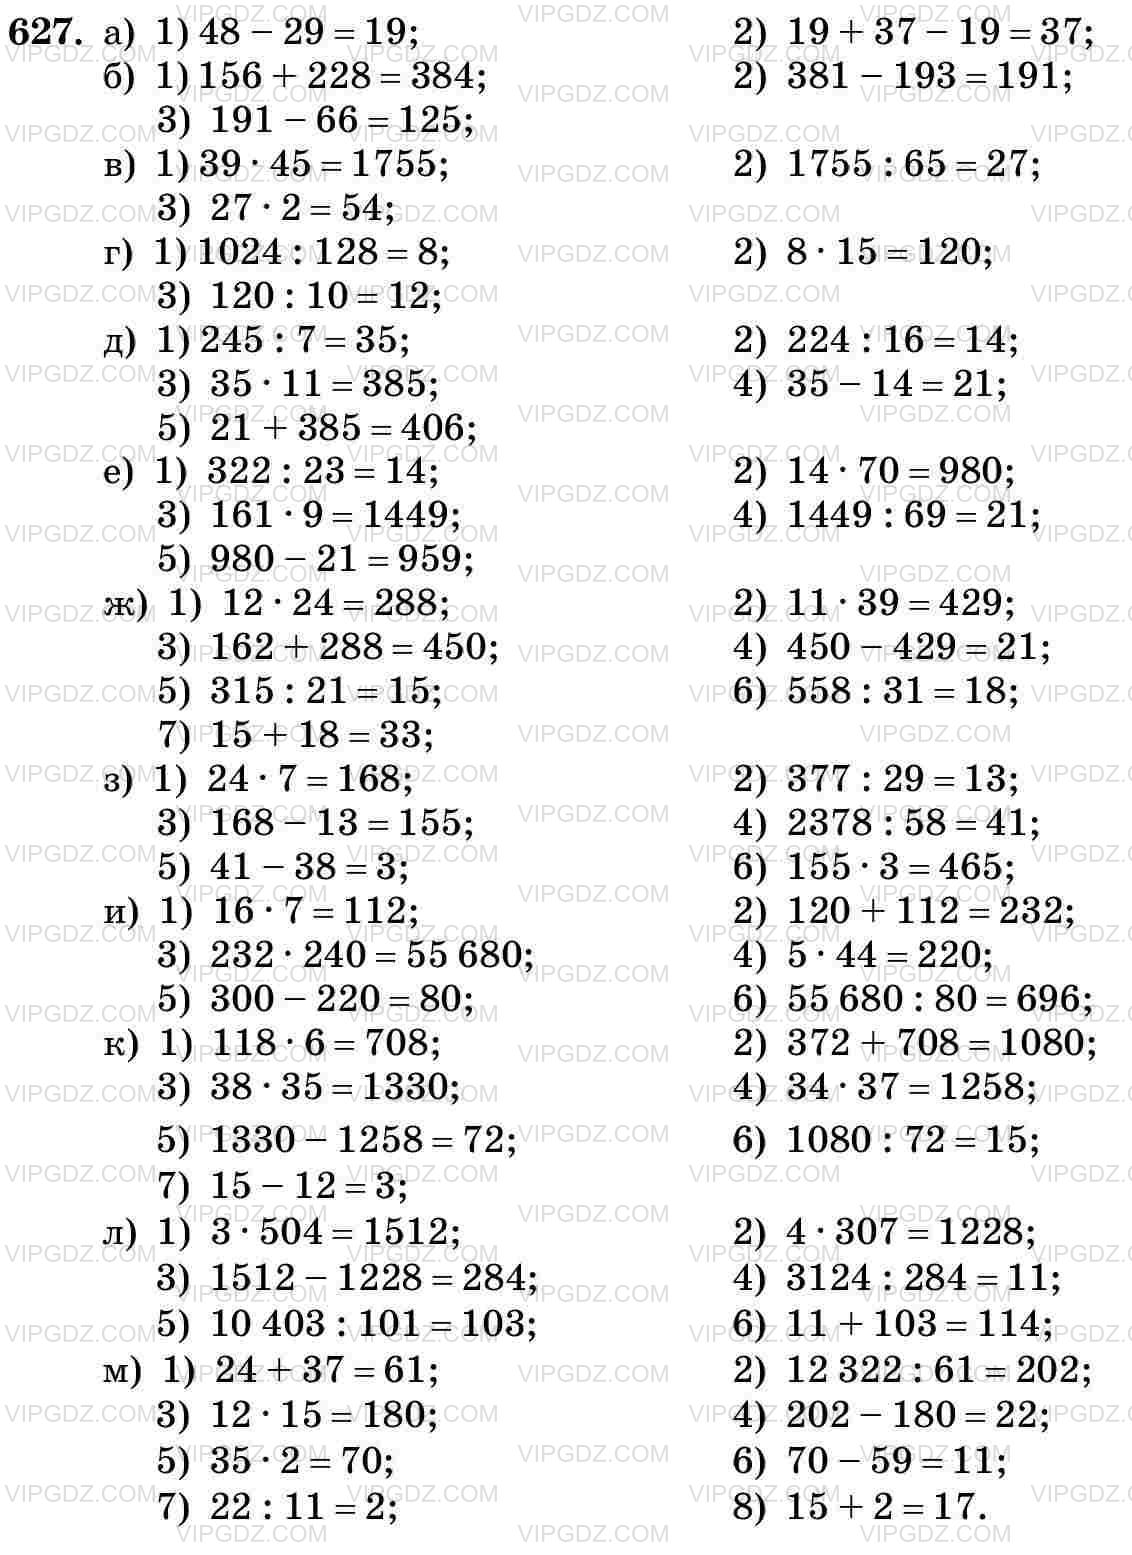 Изображение решения 3 на Задание 627 из ГДЗ по Математике за 5 класс: Н. Я. Виленкин, В. И. Жохов, А. С. Чесноков, С. И. Шварцбурд.